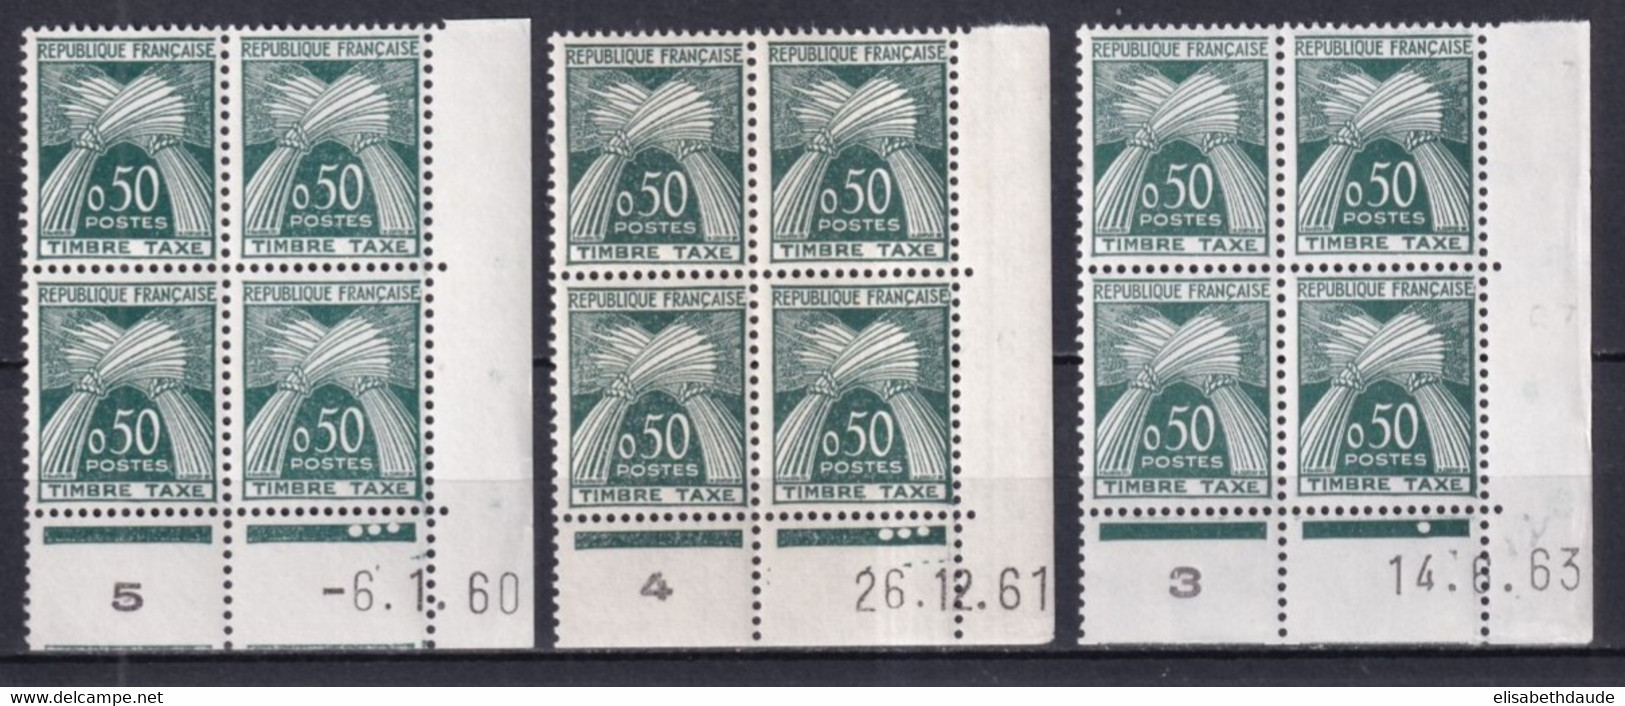 TAXE GERBES  - 1960+1961+1963 - YVERT N° 93 ** MNH BLOC De 4 COIN DATE - COTE = 250 EUR. - Taxe